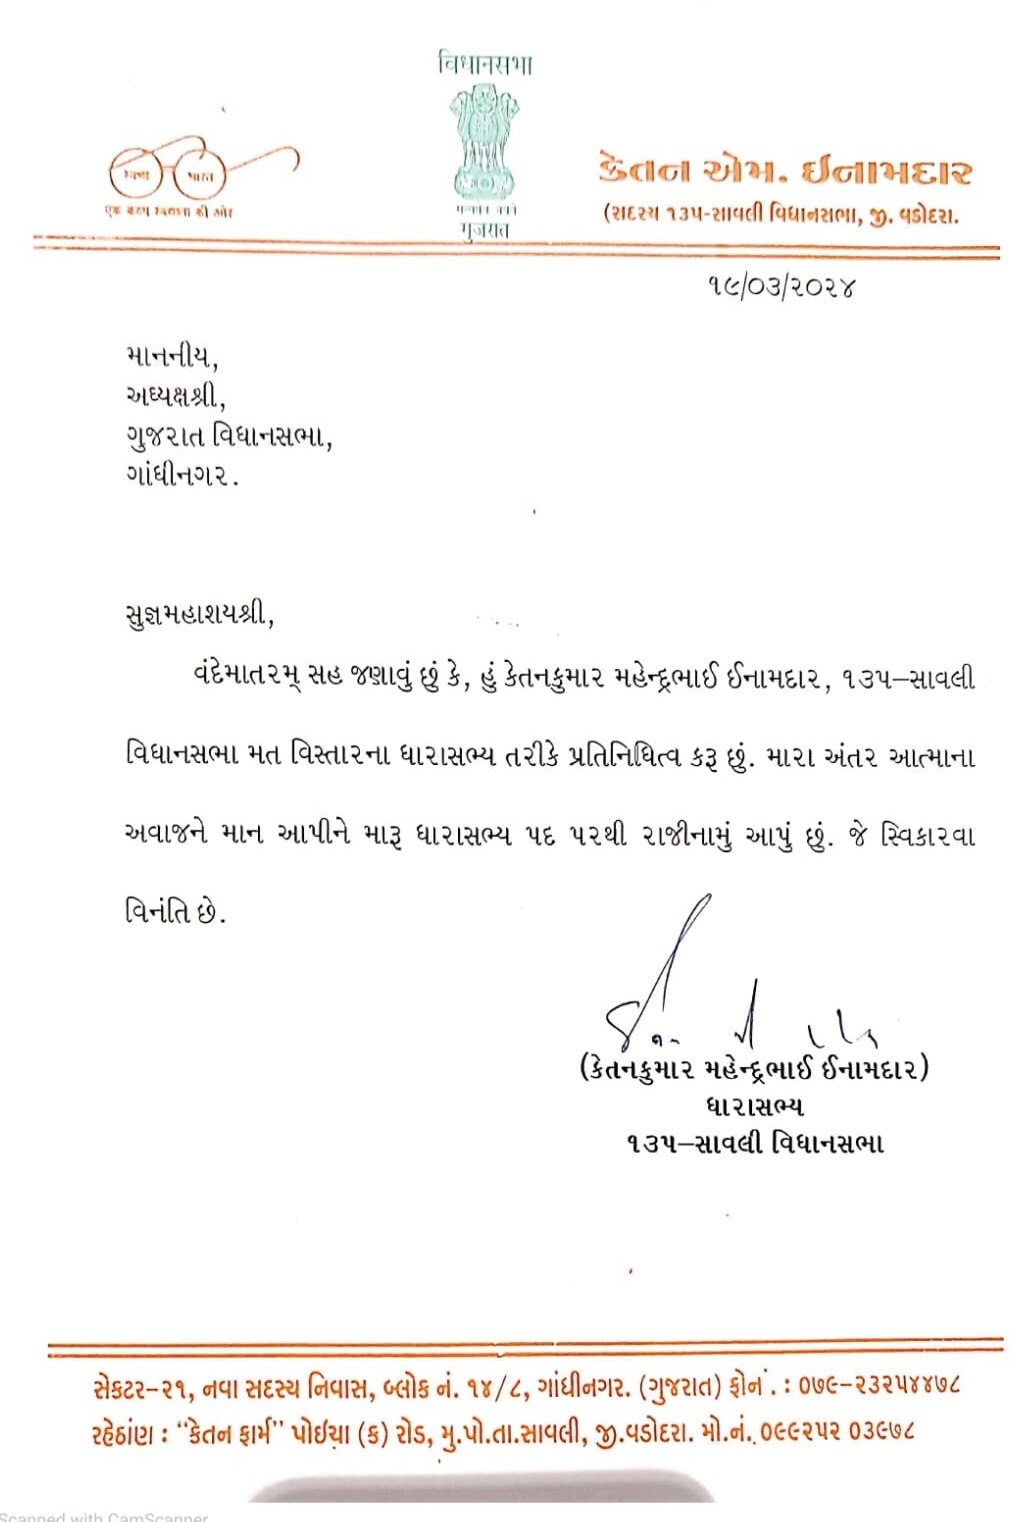 Gujarat: ભાજપના ધારાસભ્યએ રાજીનામું આપતા રાજકારણમાં ખળભળાટ, મોડી રાત્રે વિધાનસભા અધ્યક્ષને કર્યો ઈ-મેઈલ